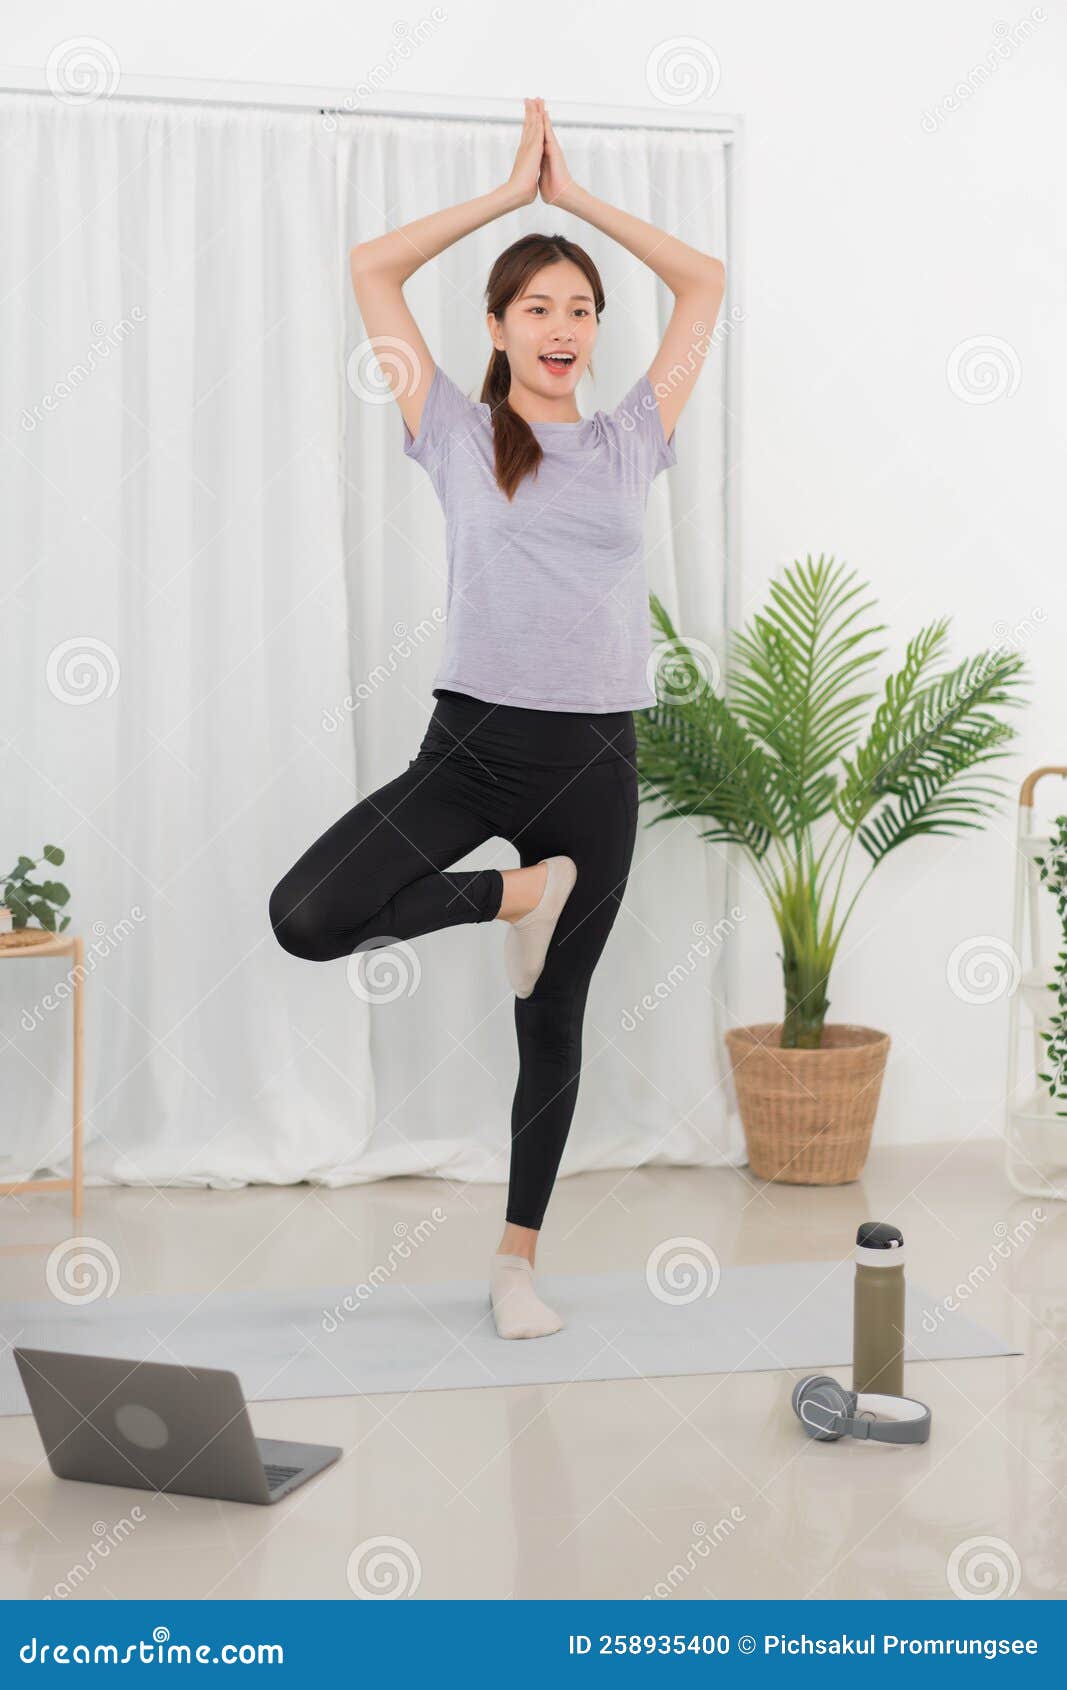 Concepto De Ejercicio De Yoga Mujer Asiática De Pie a Hacer En Posición De  árbol Y Ver El Tutorial De Yoga En Línea Foto de archivo - Imagen de sano,  deporte: 258935400